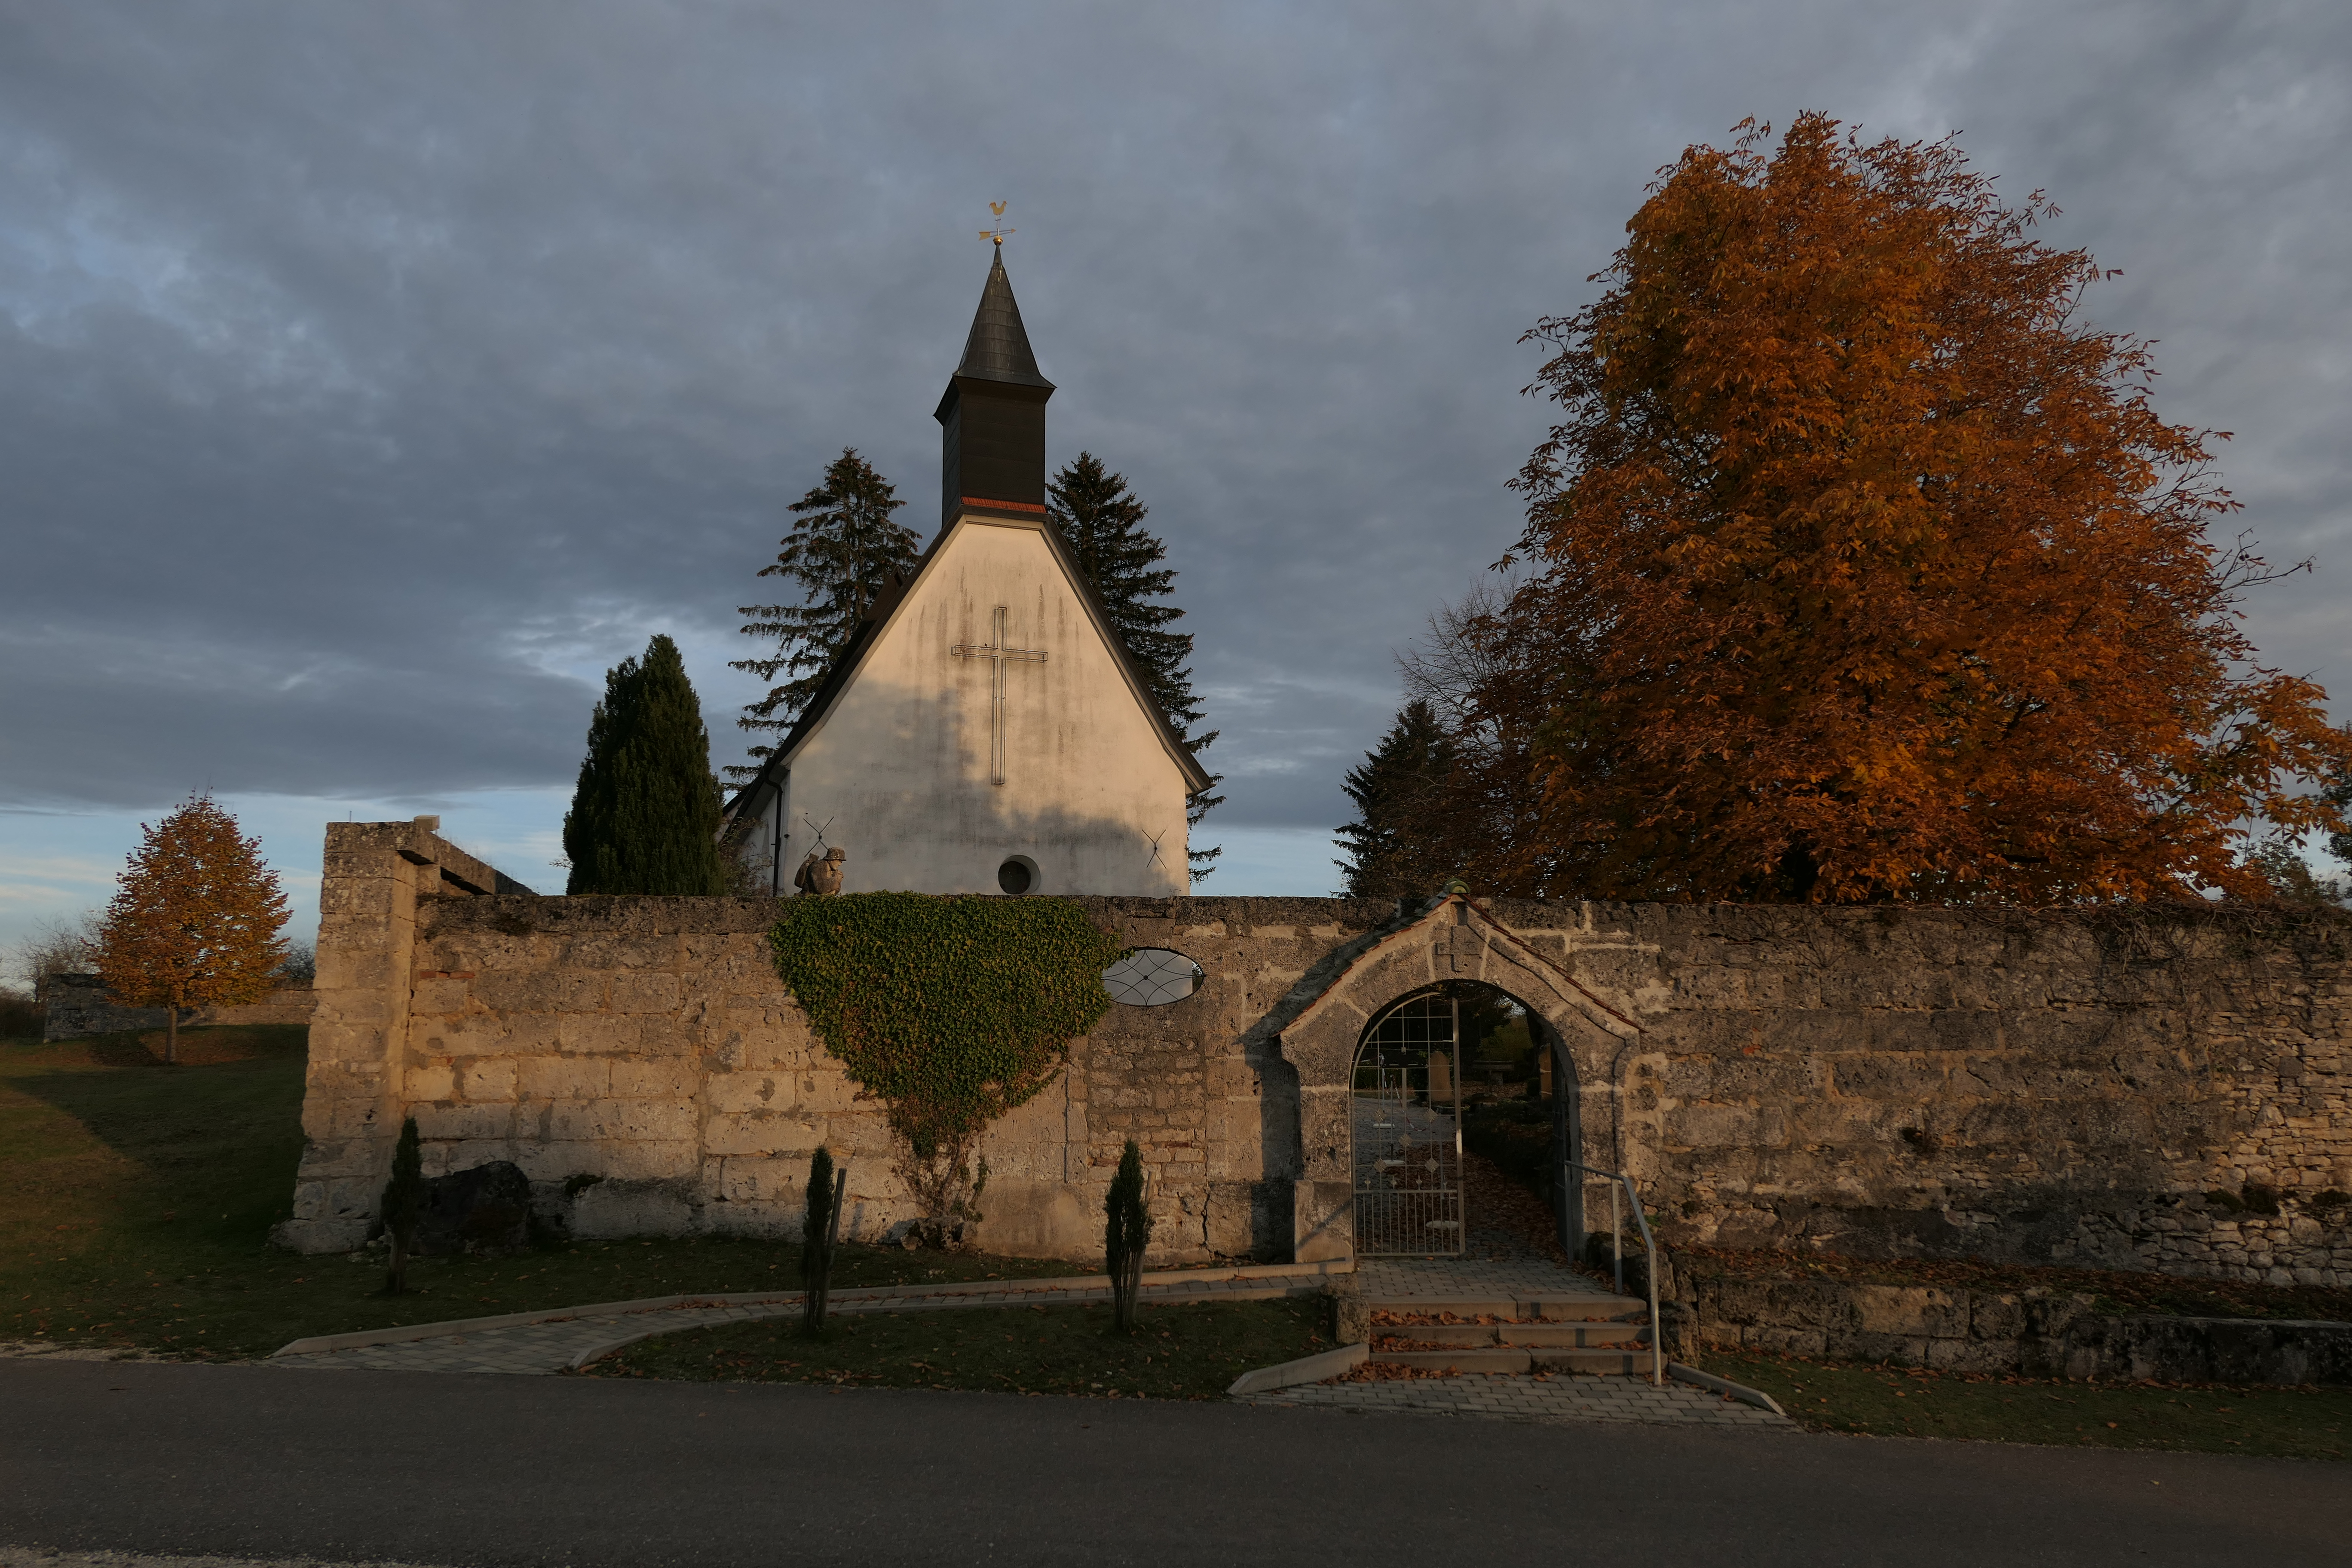 Gruorn im Herbst auf dem ehemaligen Truppenübungsplatz Münsingen im Biosphärengebiet Schwäbische Alb. Eine Kirche mit einem großen Kreuz auf der Fassade. Davor eine Steinwand mit einem tor. Ringsherum einige Bäume mit bunten Blättern. Der Himmel ist bedeckt.